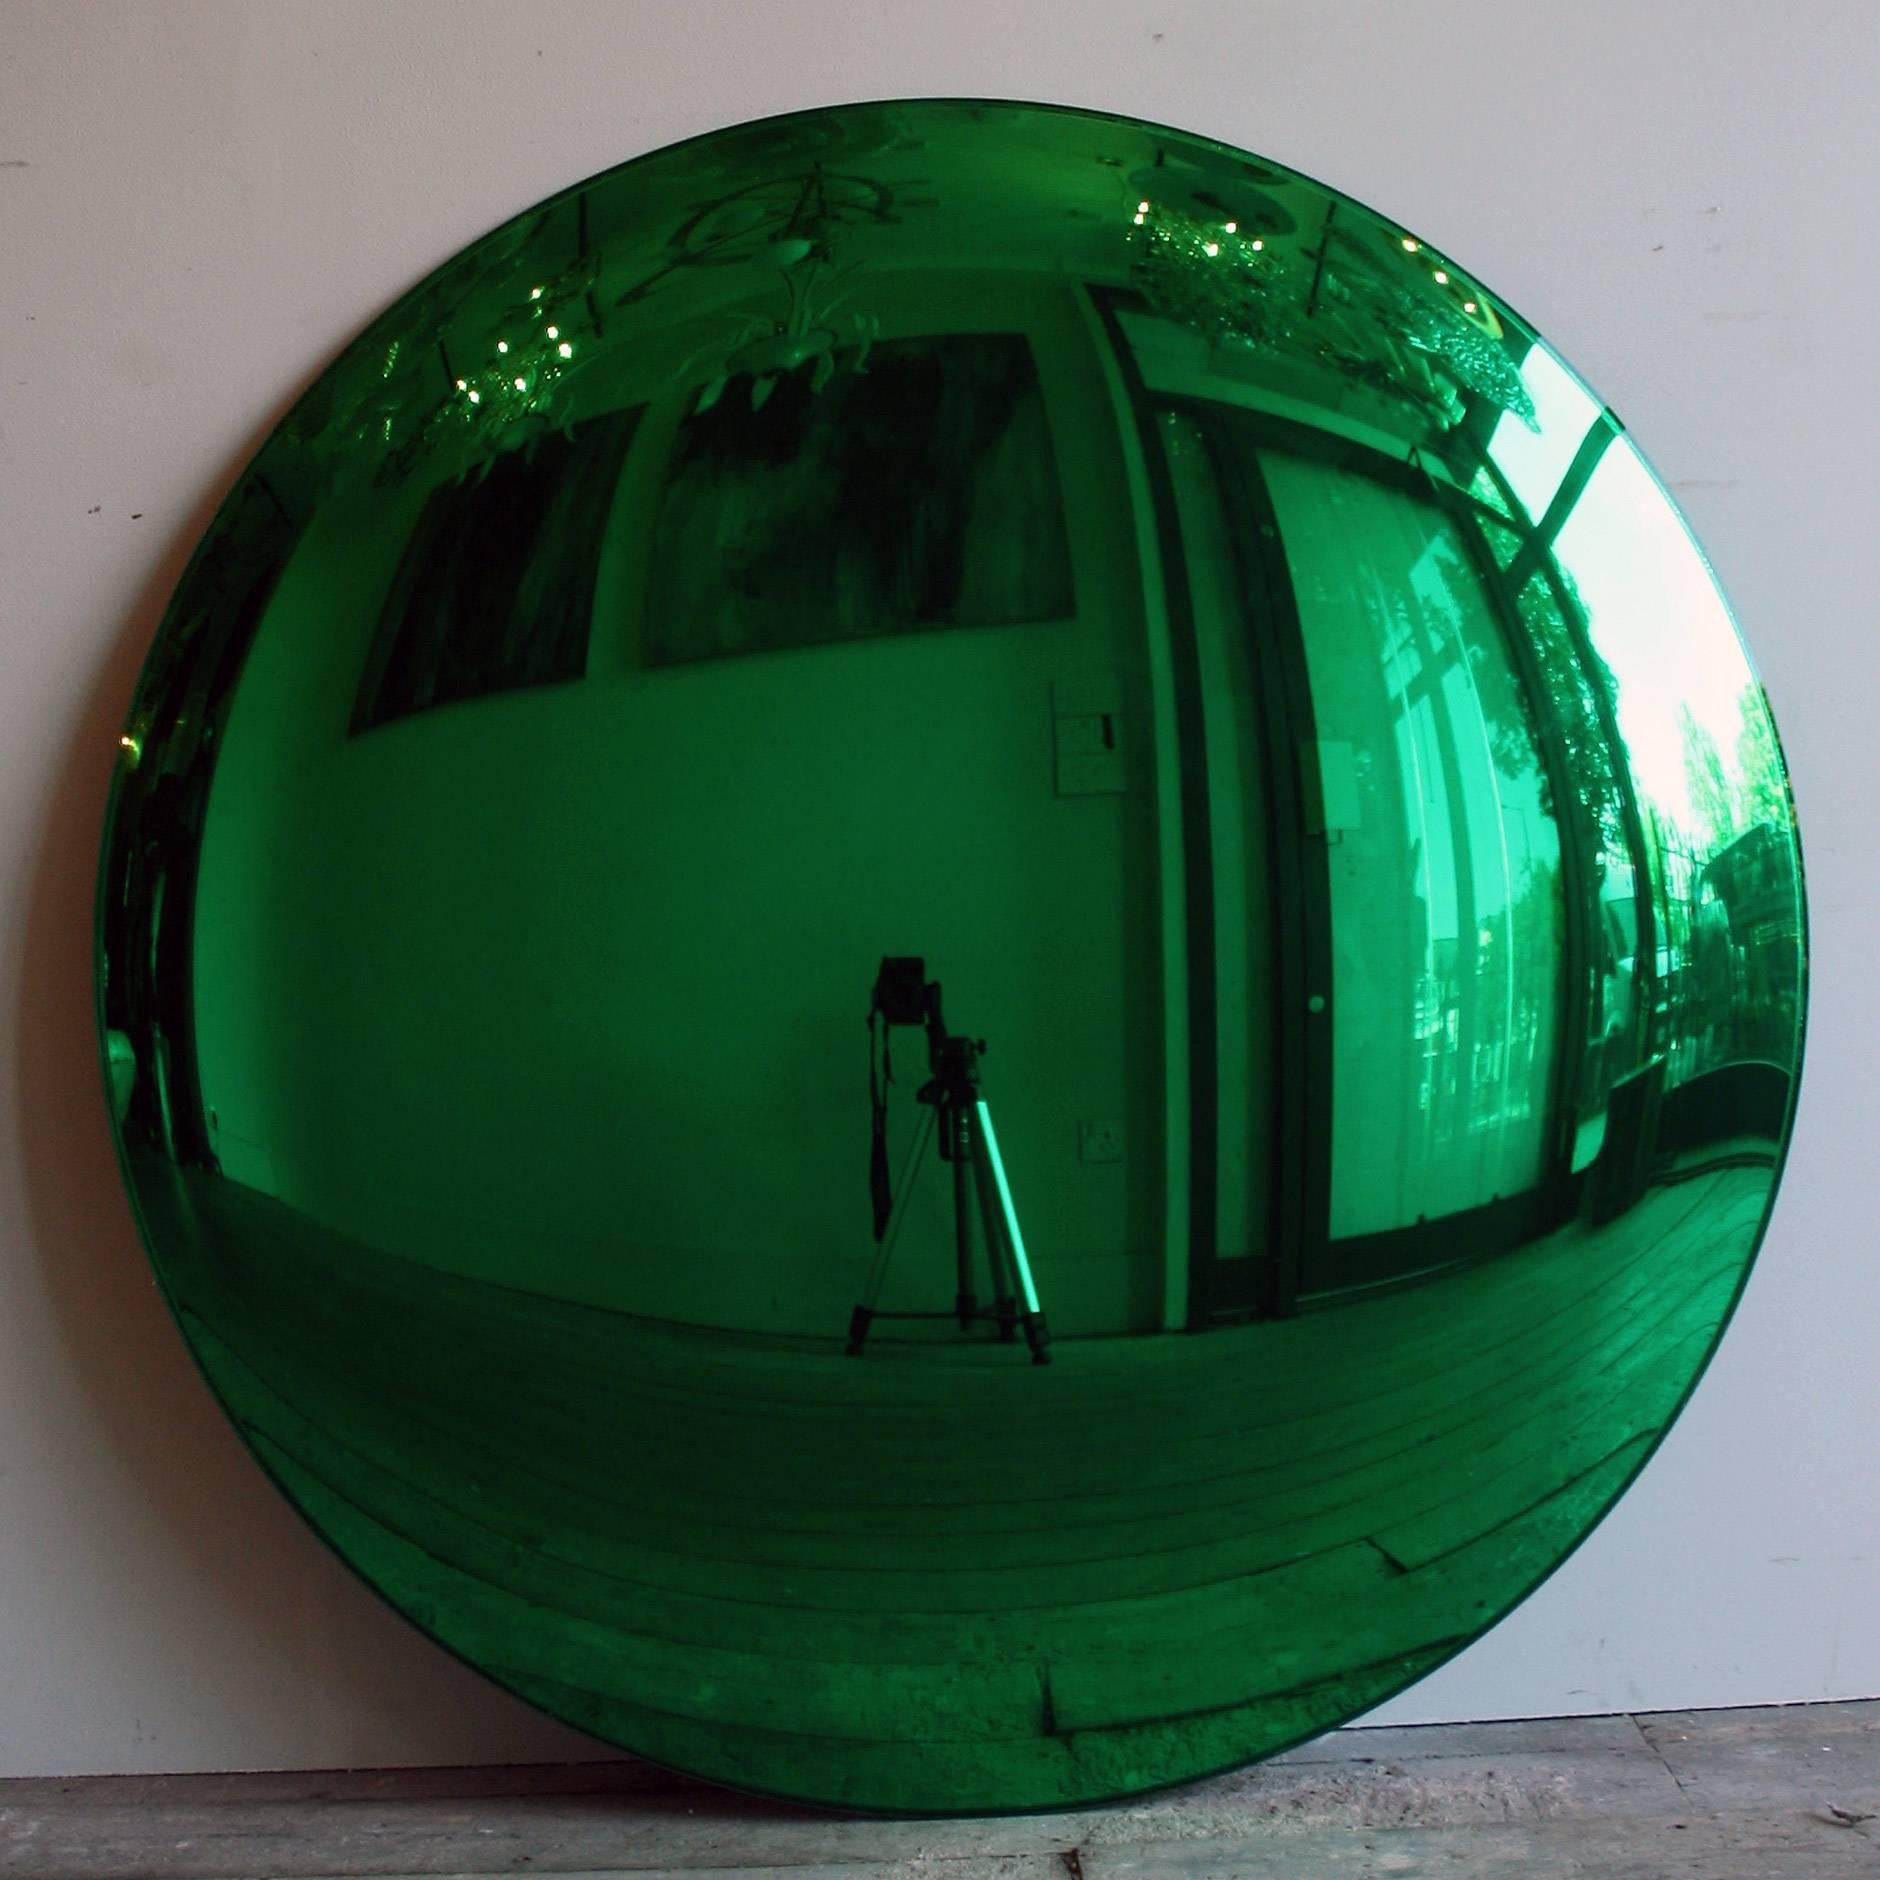 Un grand miroir convexe vert de 100 cm de diamètre avec trois clips sur mesure pour une installation murale. Une véritable pièce maîtresse !

Tous les miroirs de couleur ont un délai de livraison de deux à trois semaines car ils sont tous fabriqués